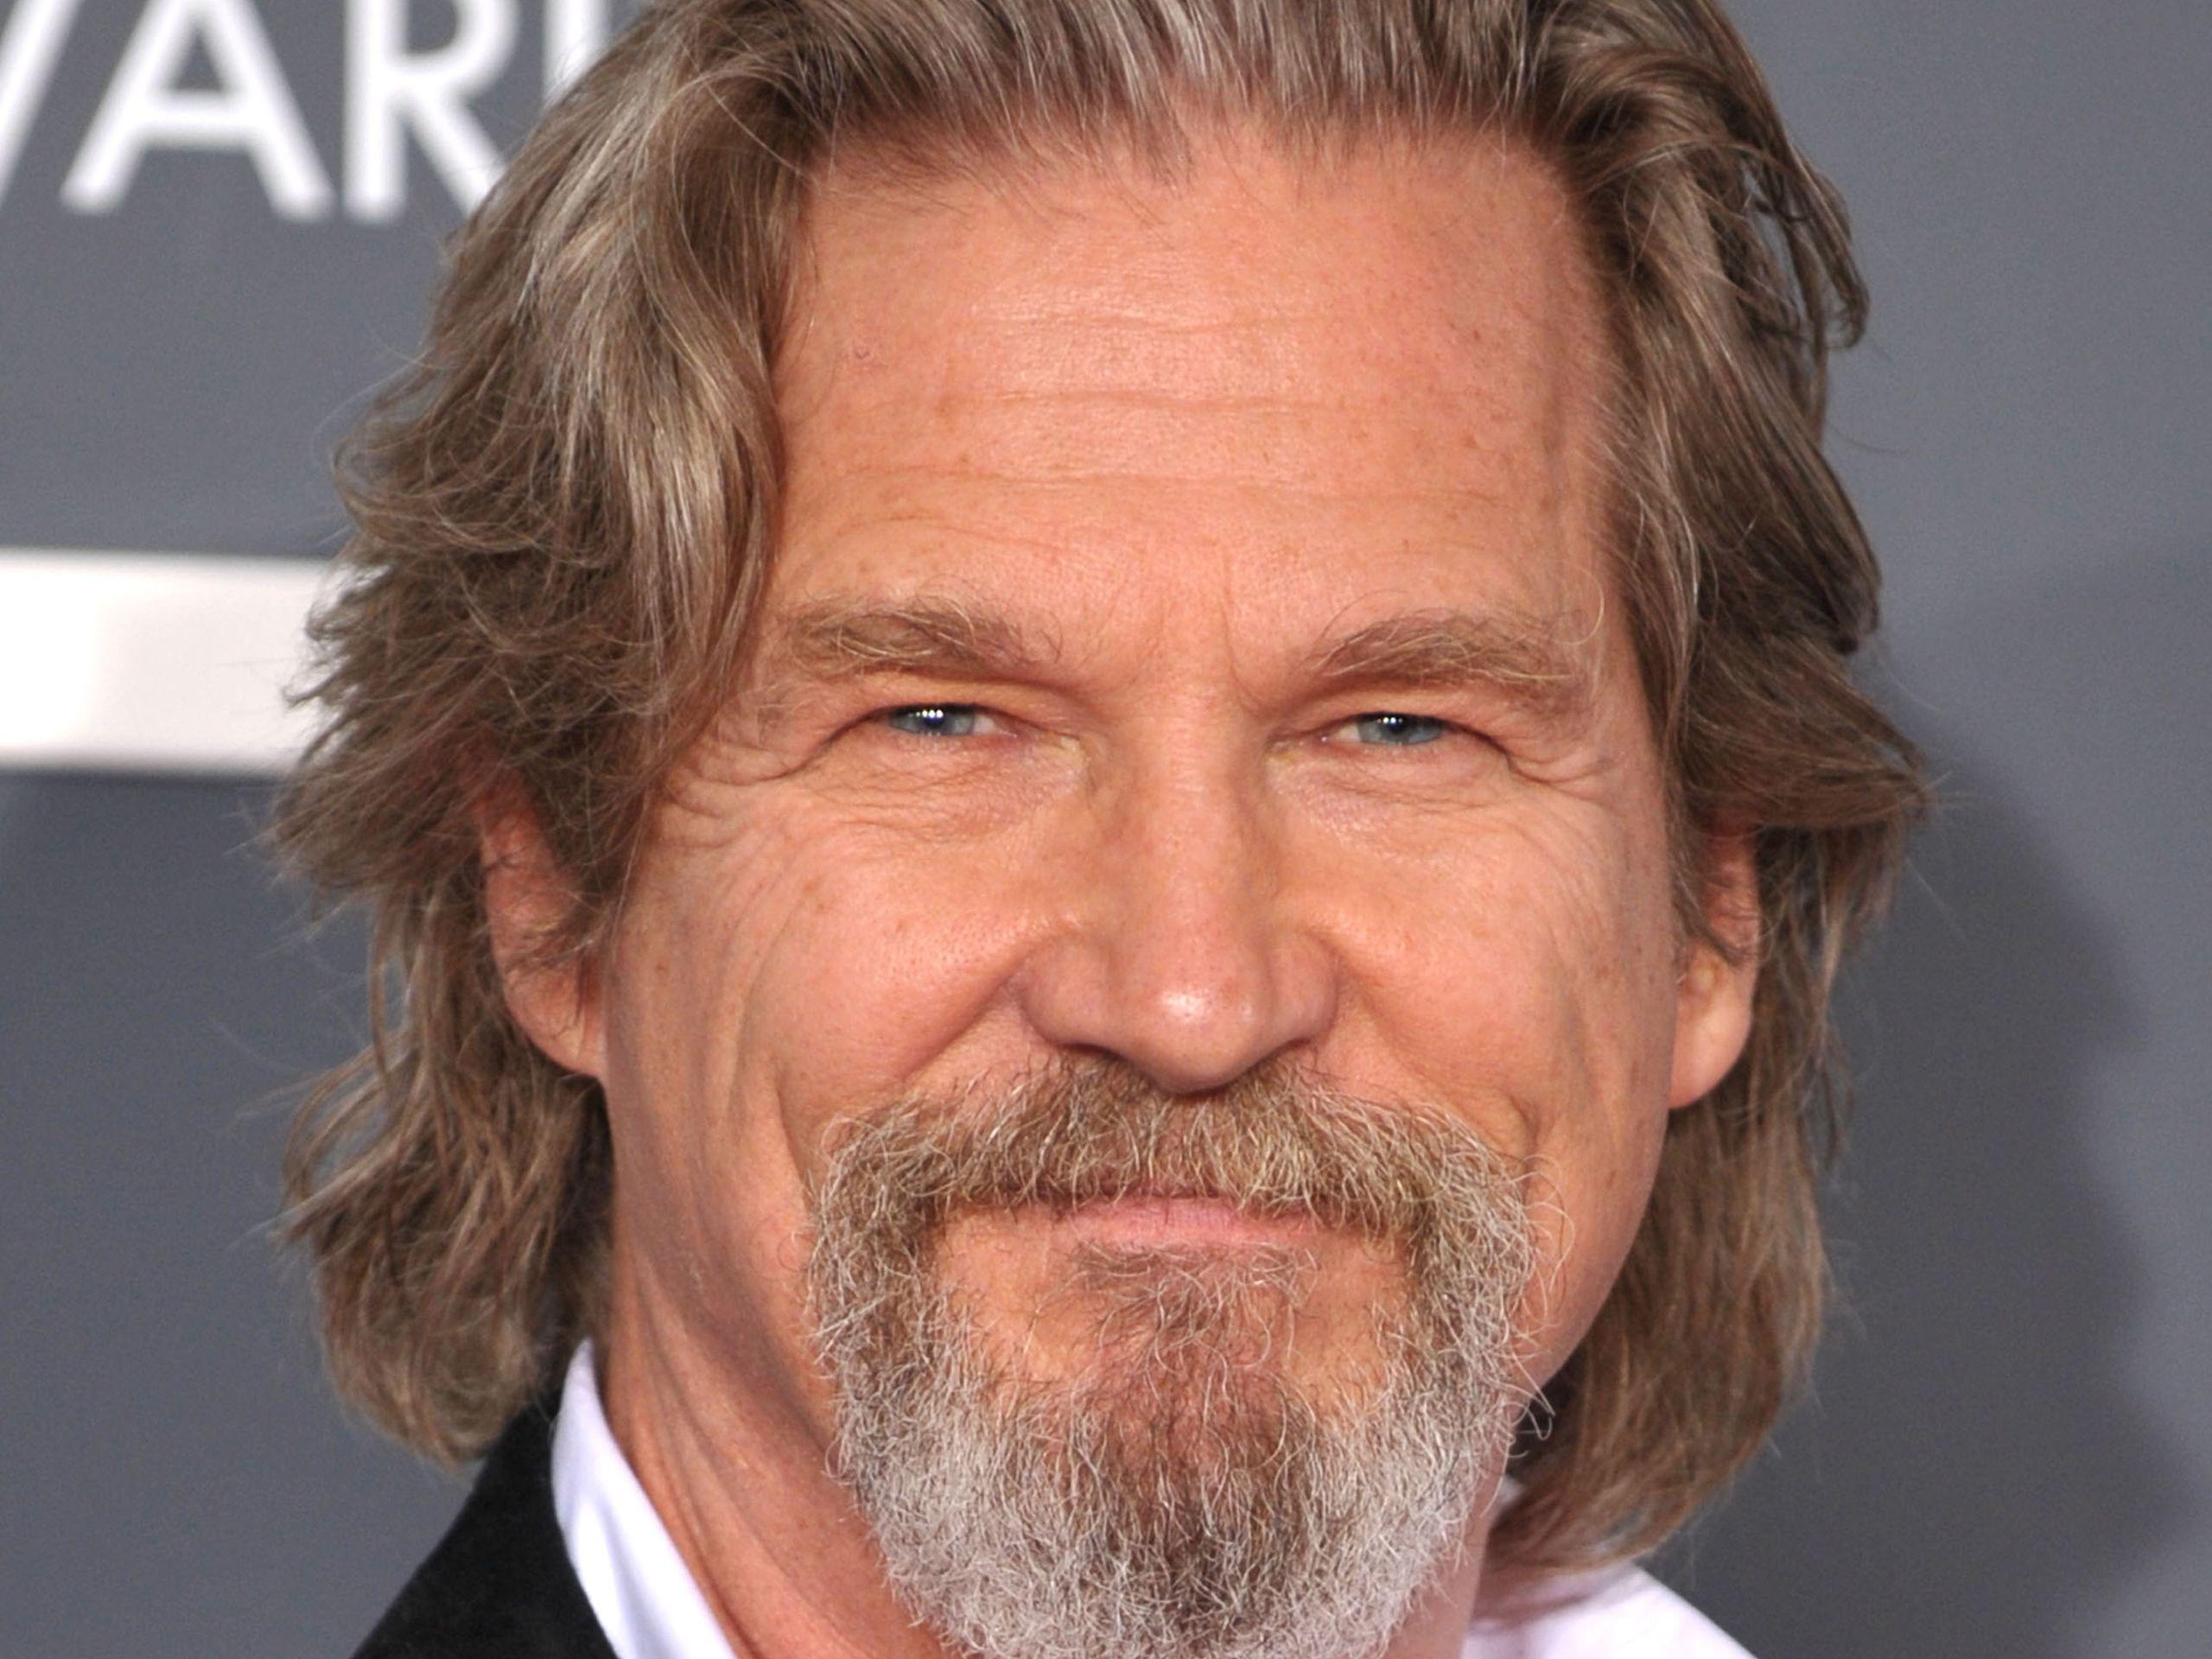 Jeff Bridges Face Wallpaper Background 54783 2560x1920px